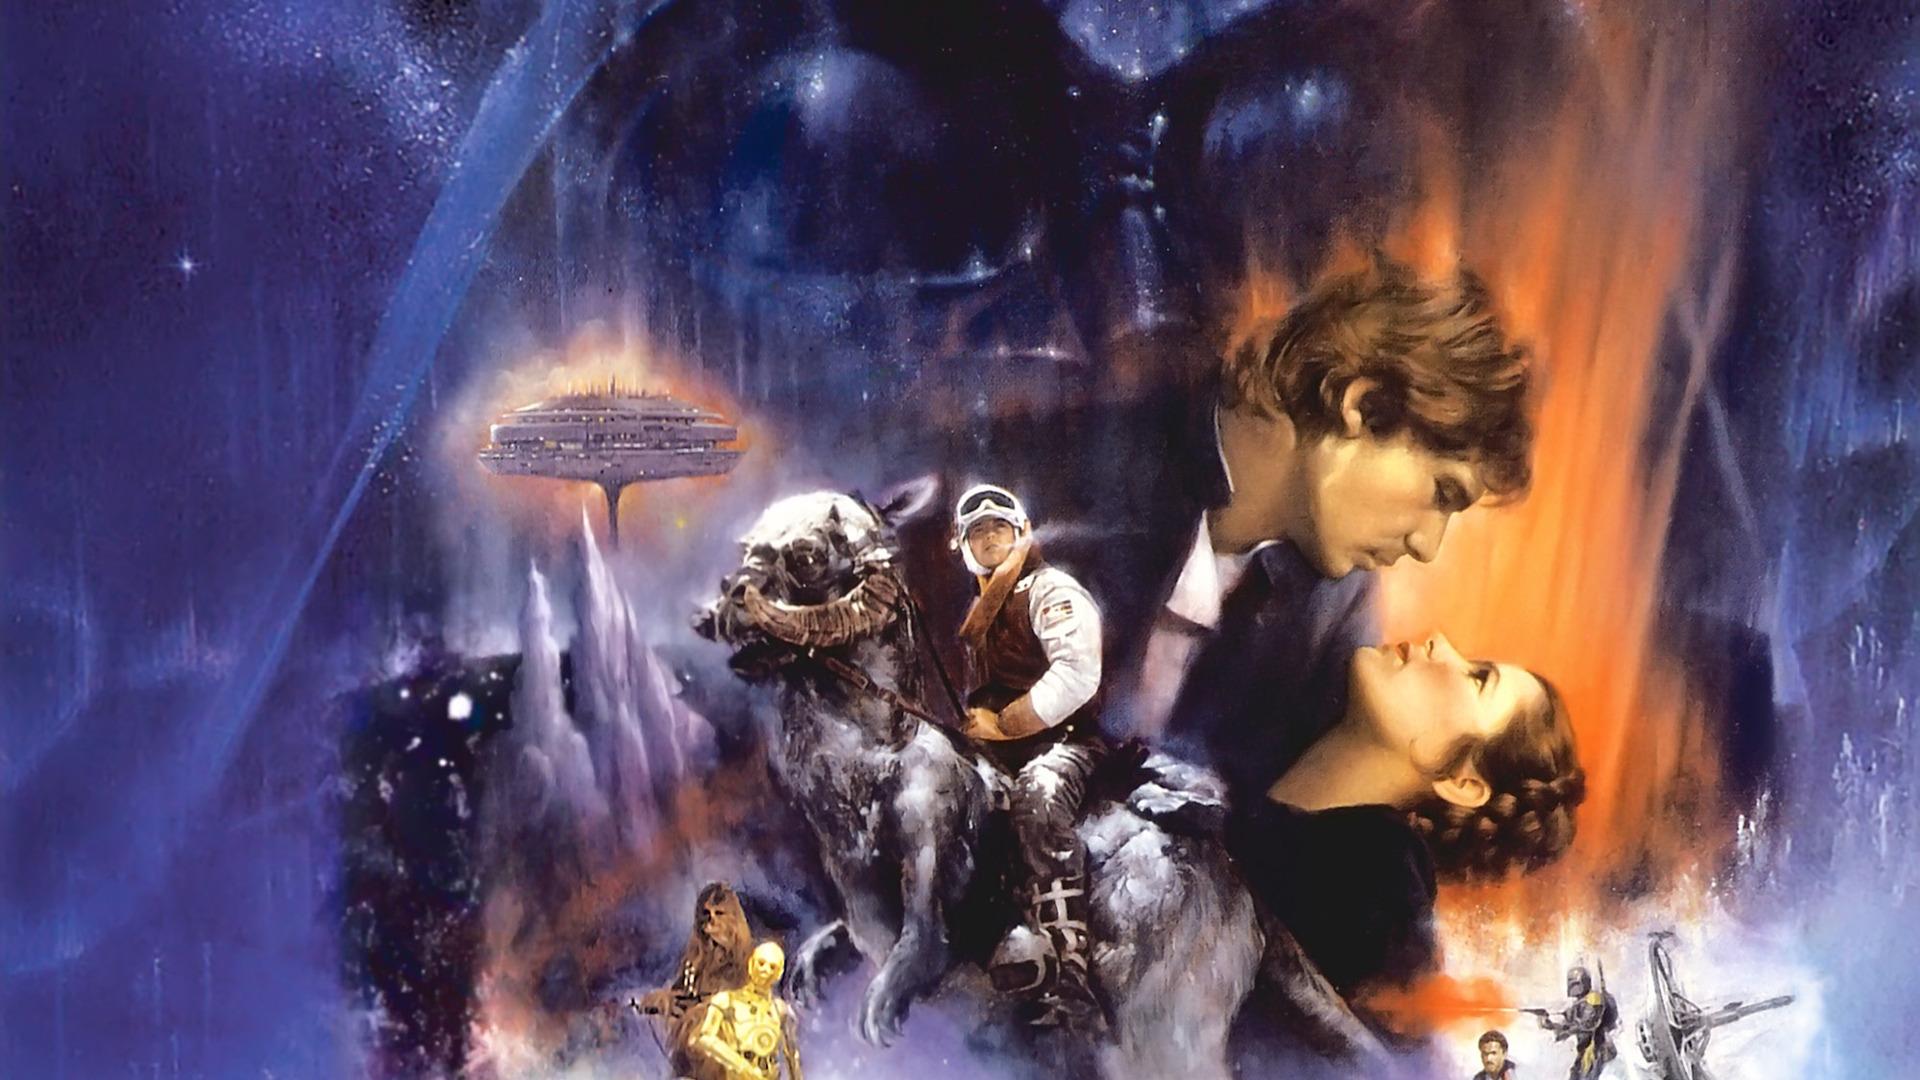 Star Wars Poster Wallpaper - WallpaperSafari